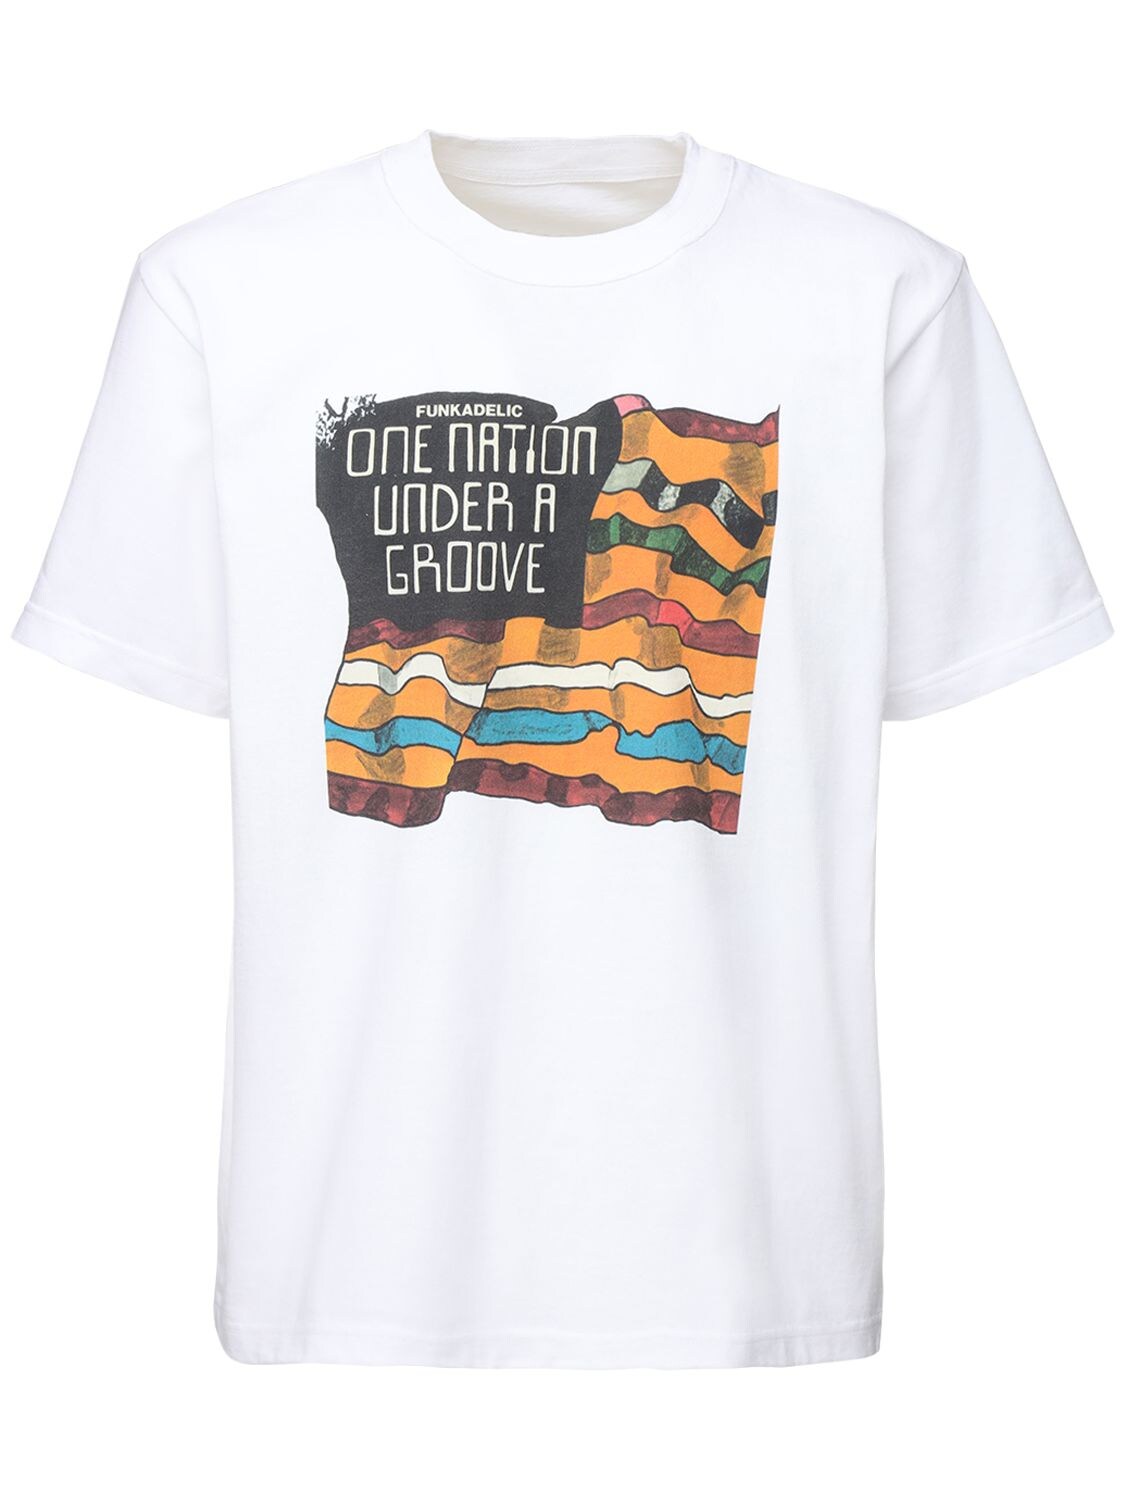 T-shirt En Jersey De Coton Imprimé Funkadelic